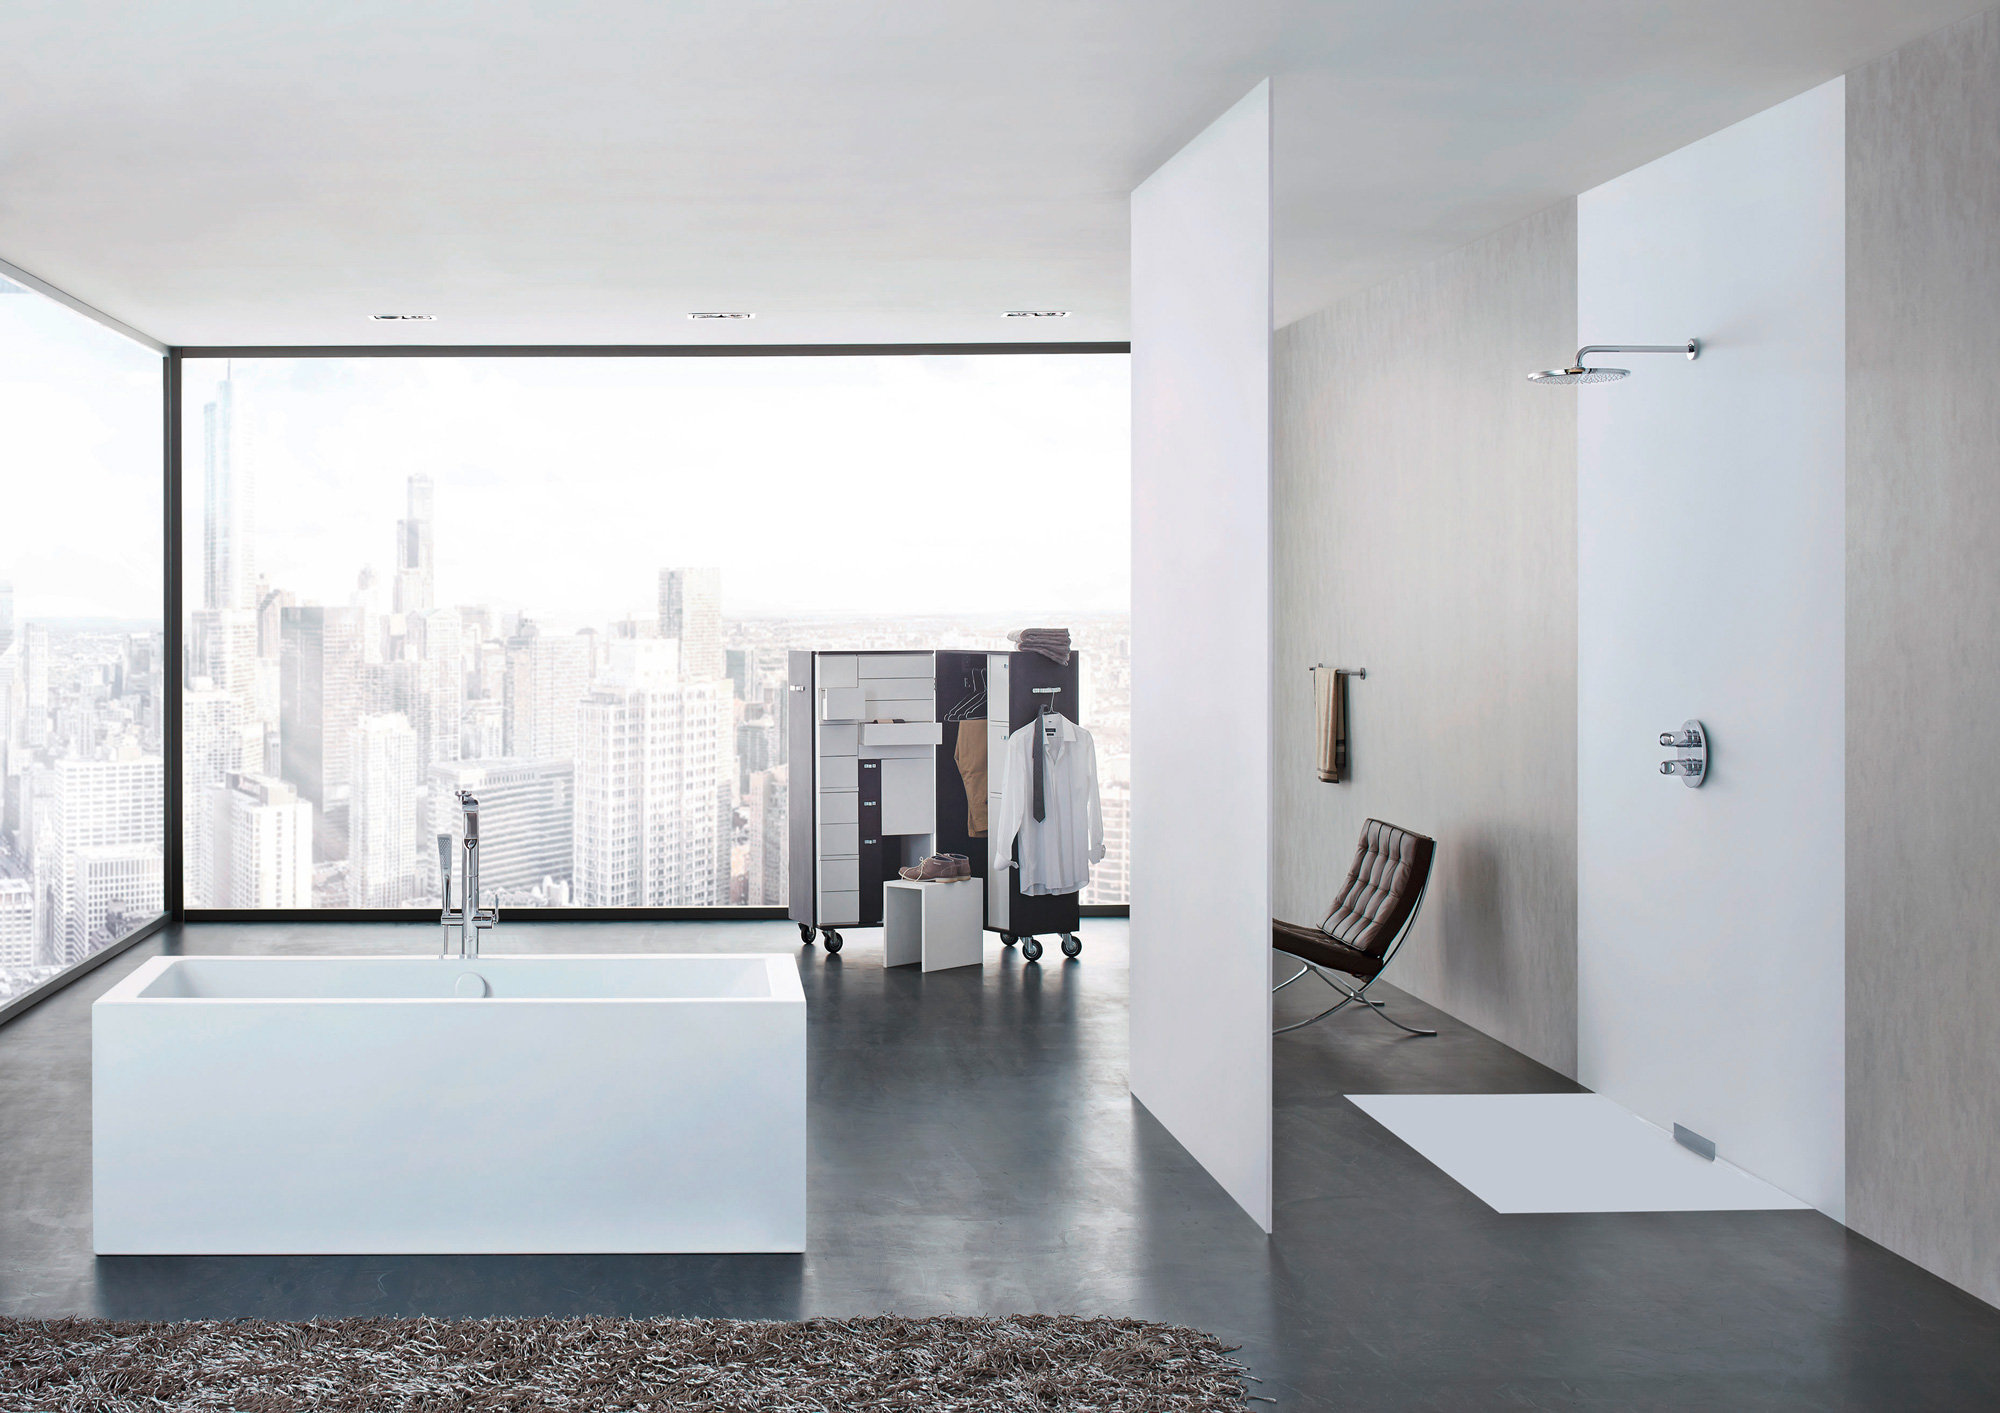 Badezimmer futuristisch: freies Badezimmer, große Glaswand